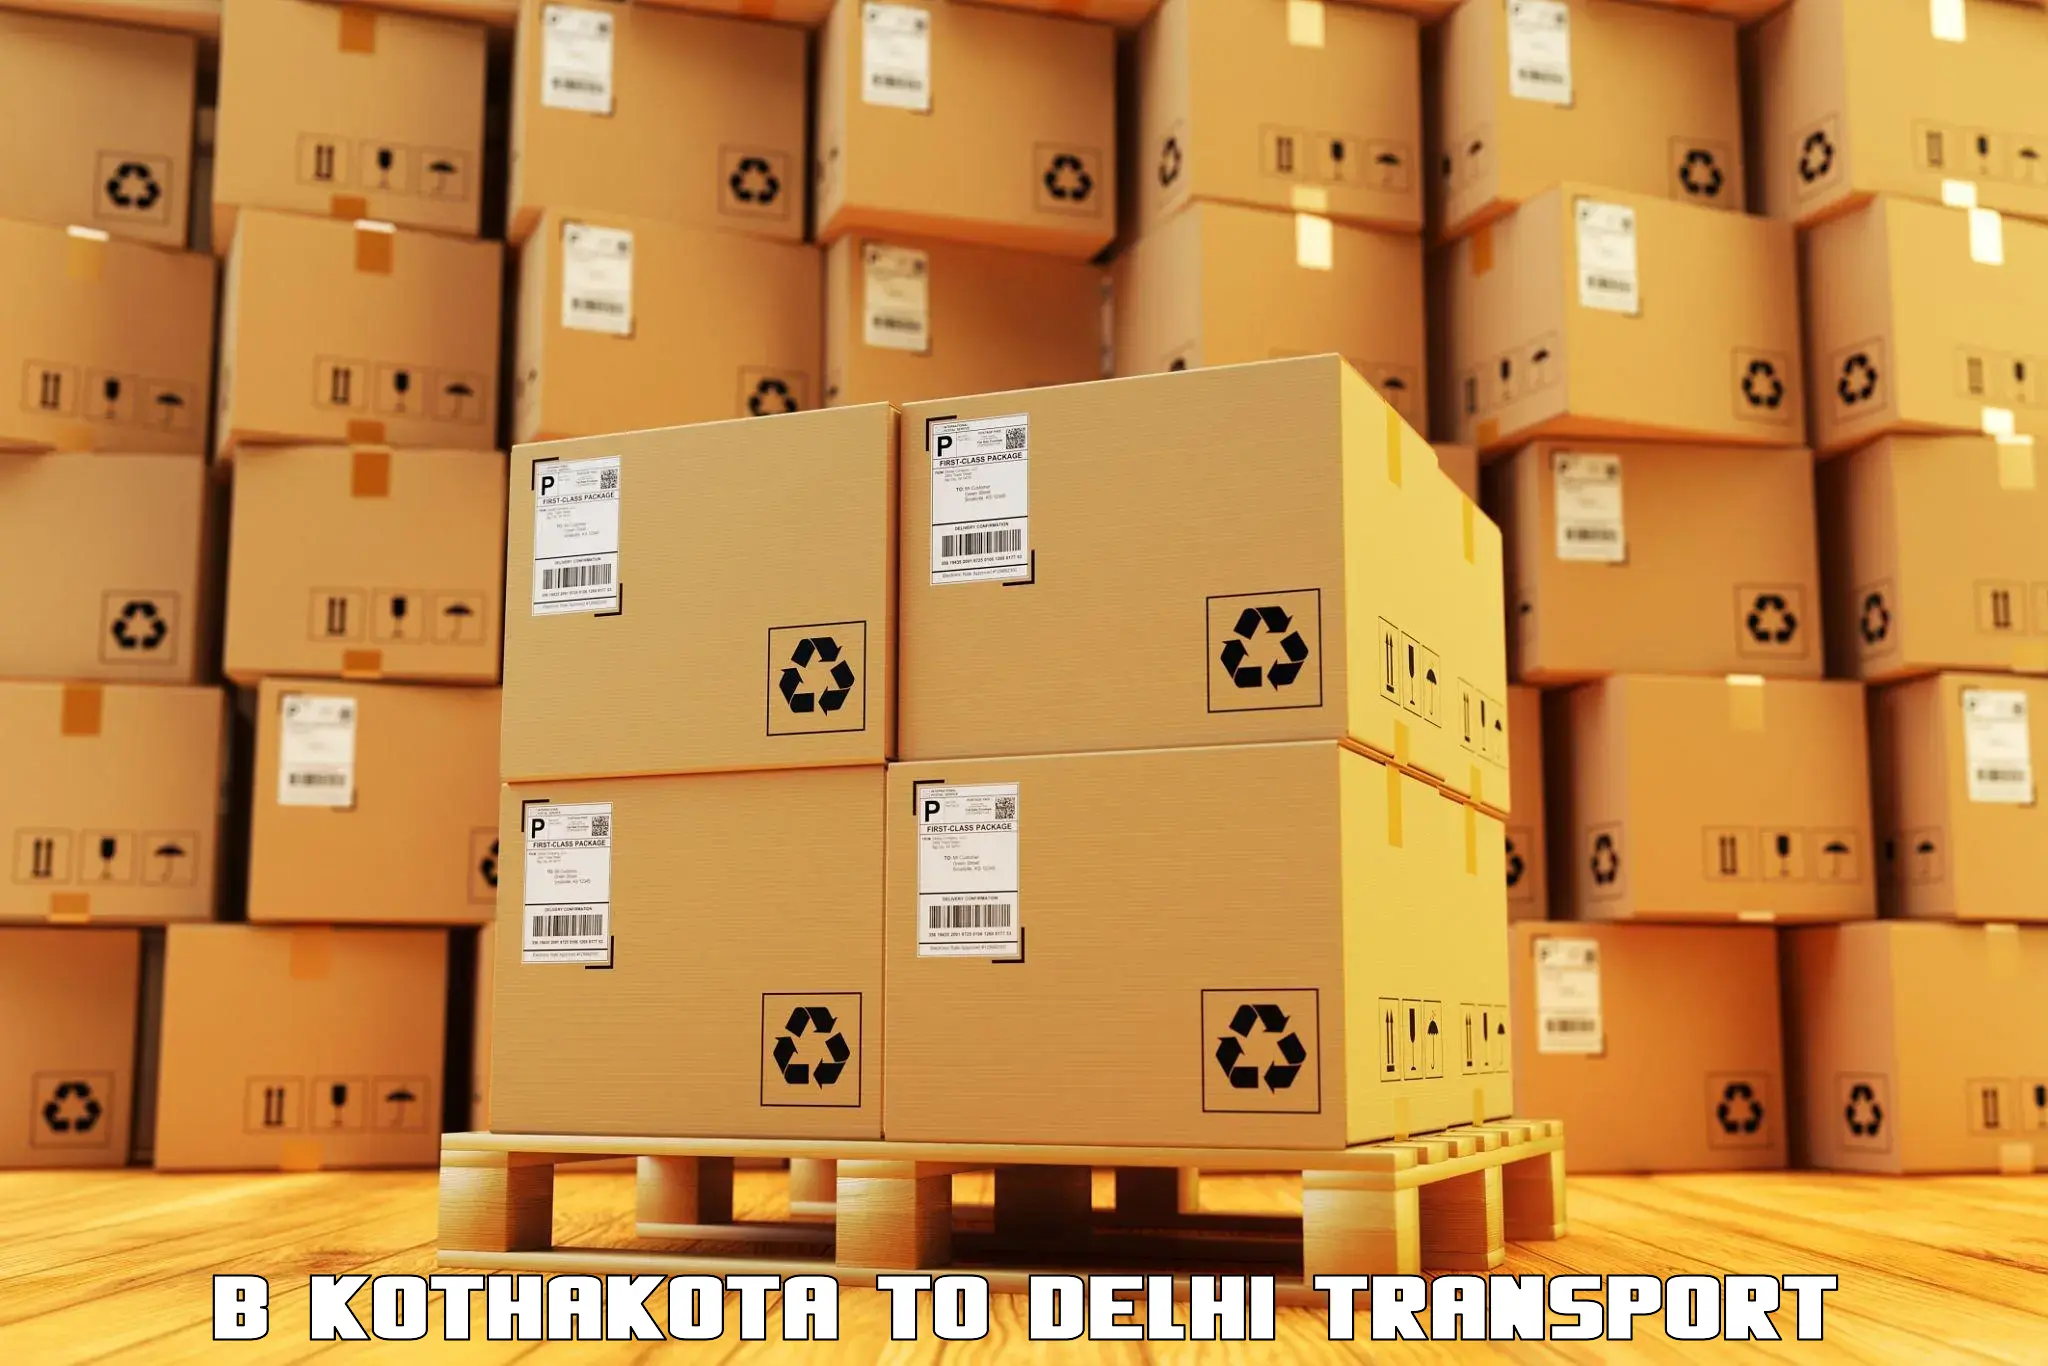 Pick up transport service B Kothakota to Subhash Nagar